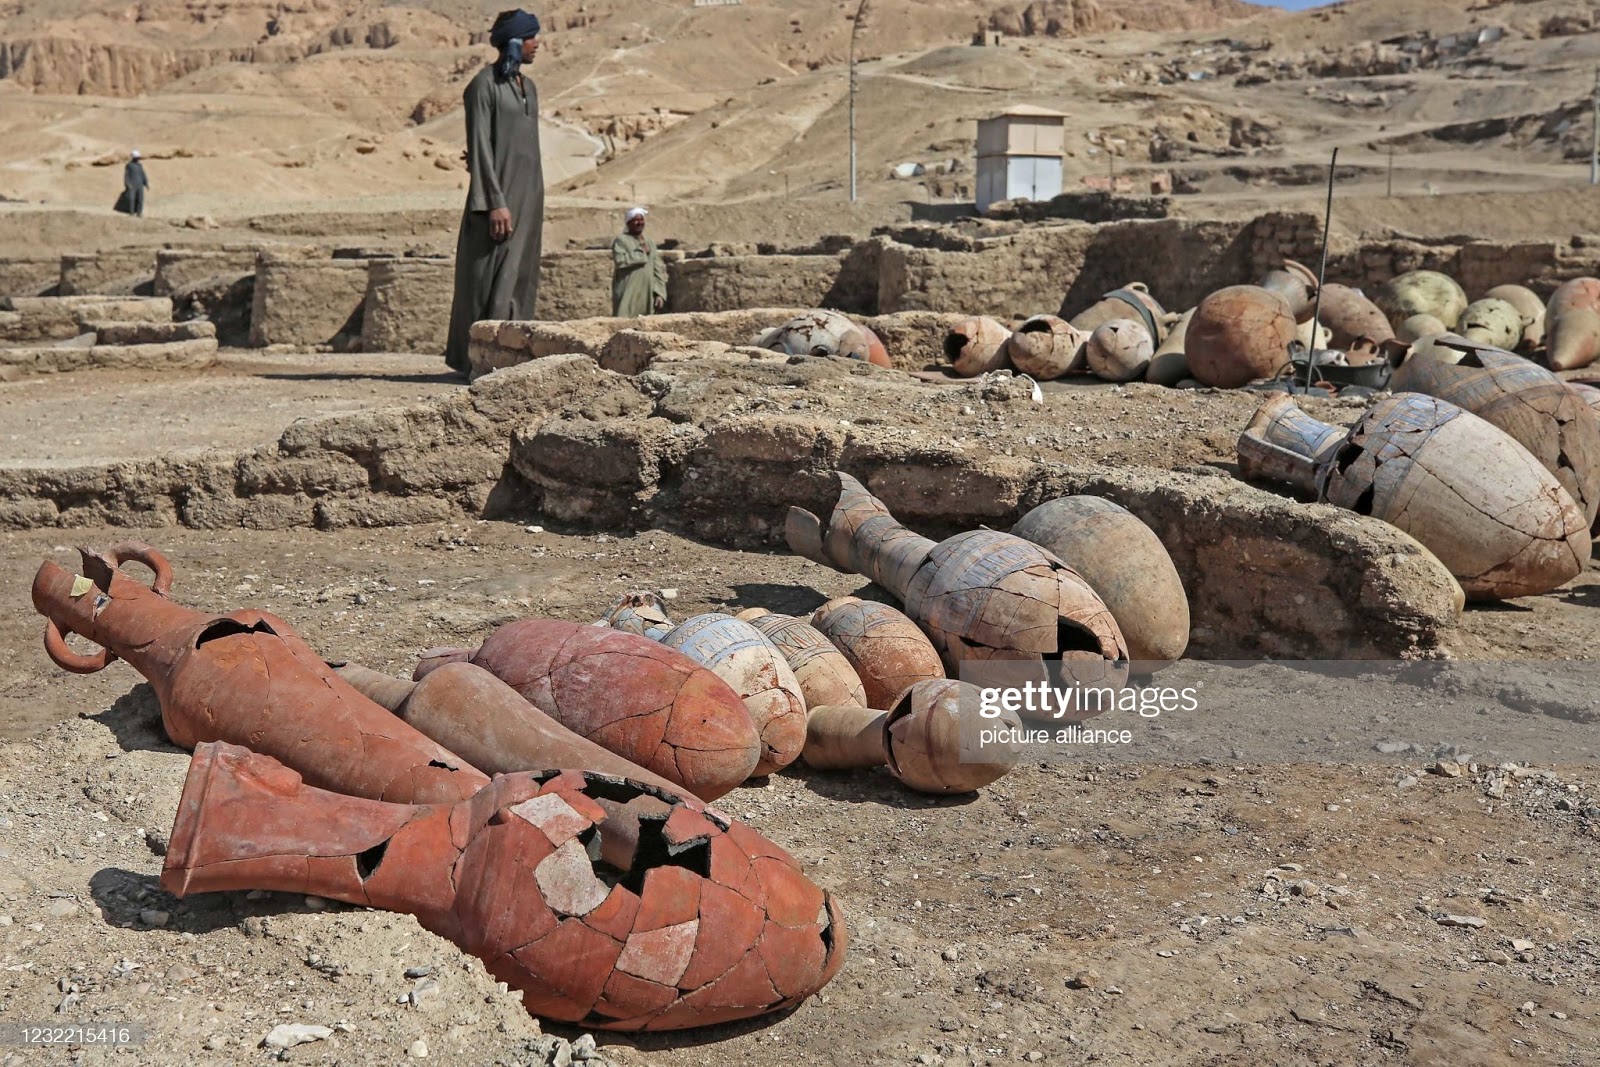 Vasos e recipientes de barro, de vários tamanhos e formas, enfieirados no chão do sítio arqueológico, sendo observados por um homem com roupas típicas da região.